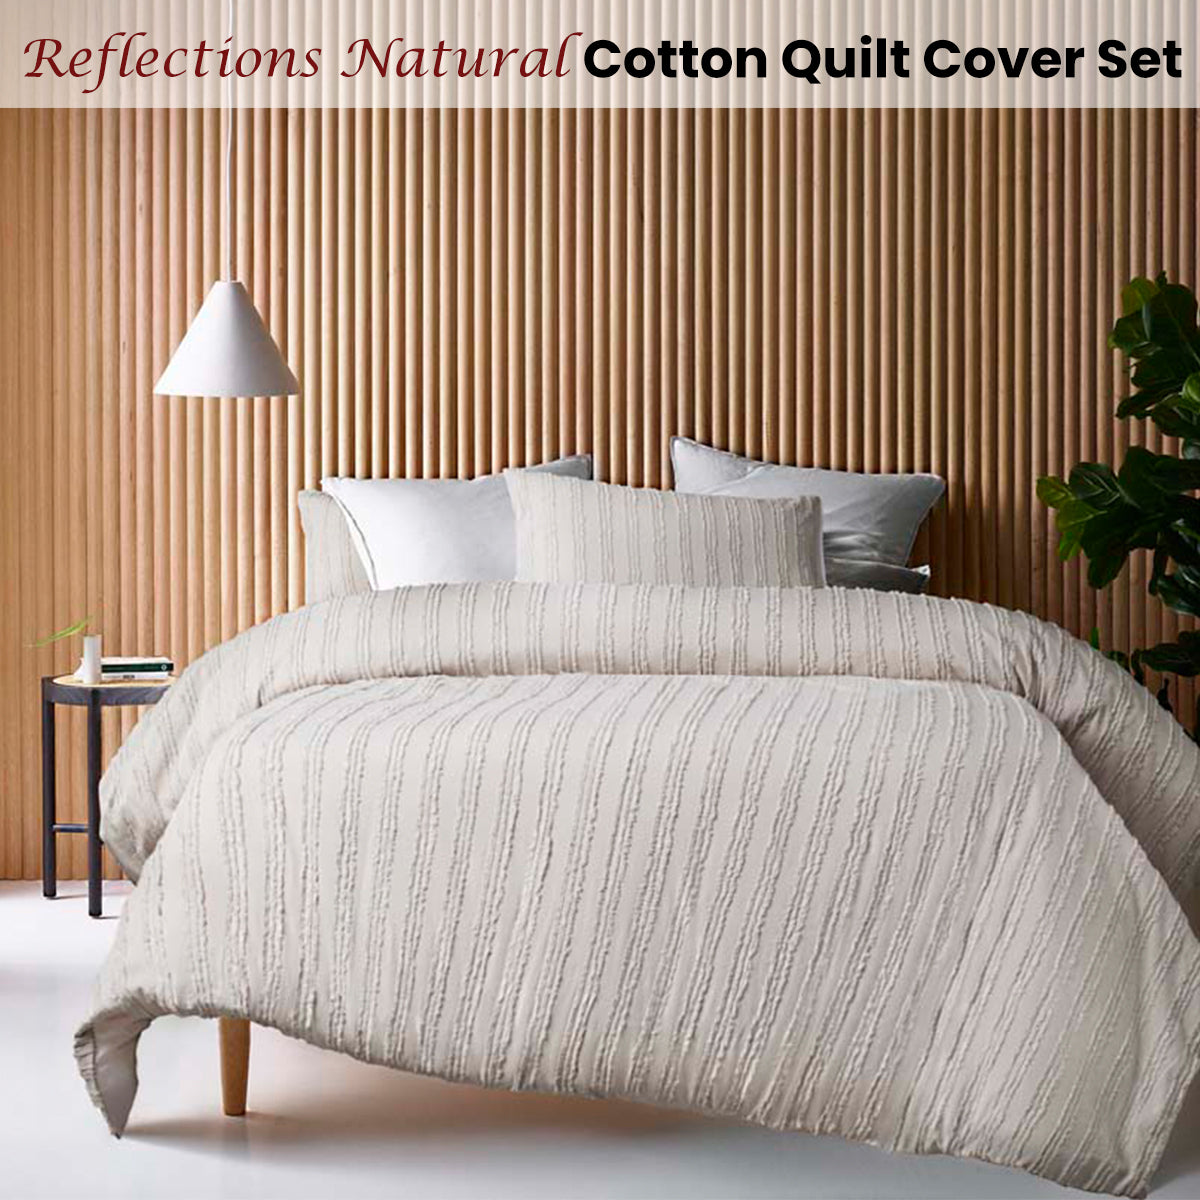 King Vintage Design Cotton Quilt Cover Set - Natural